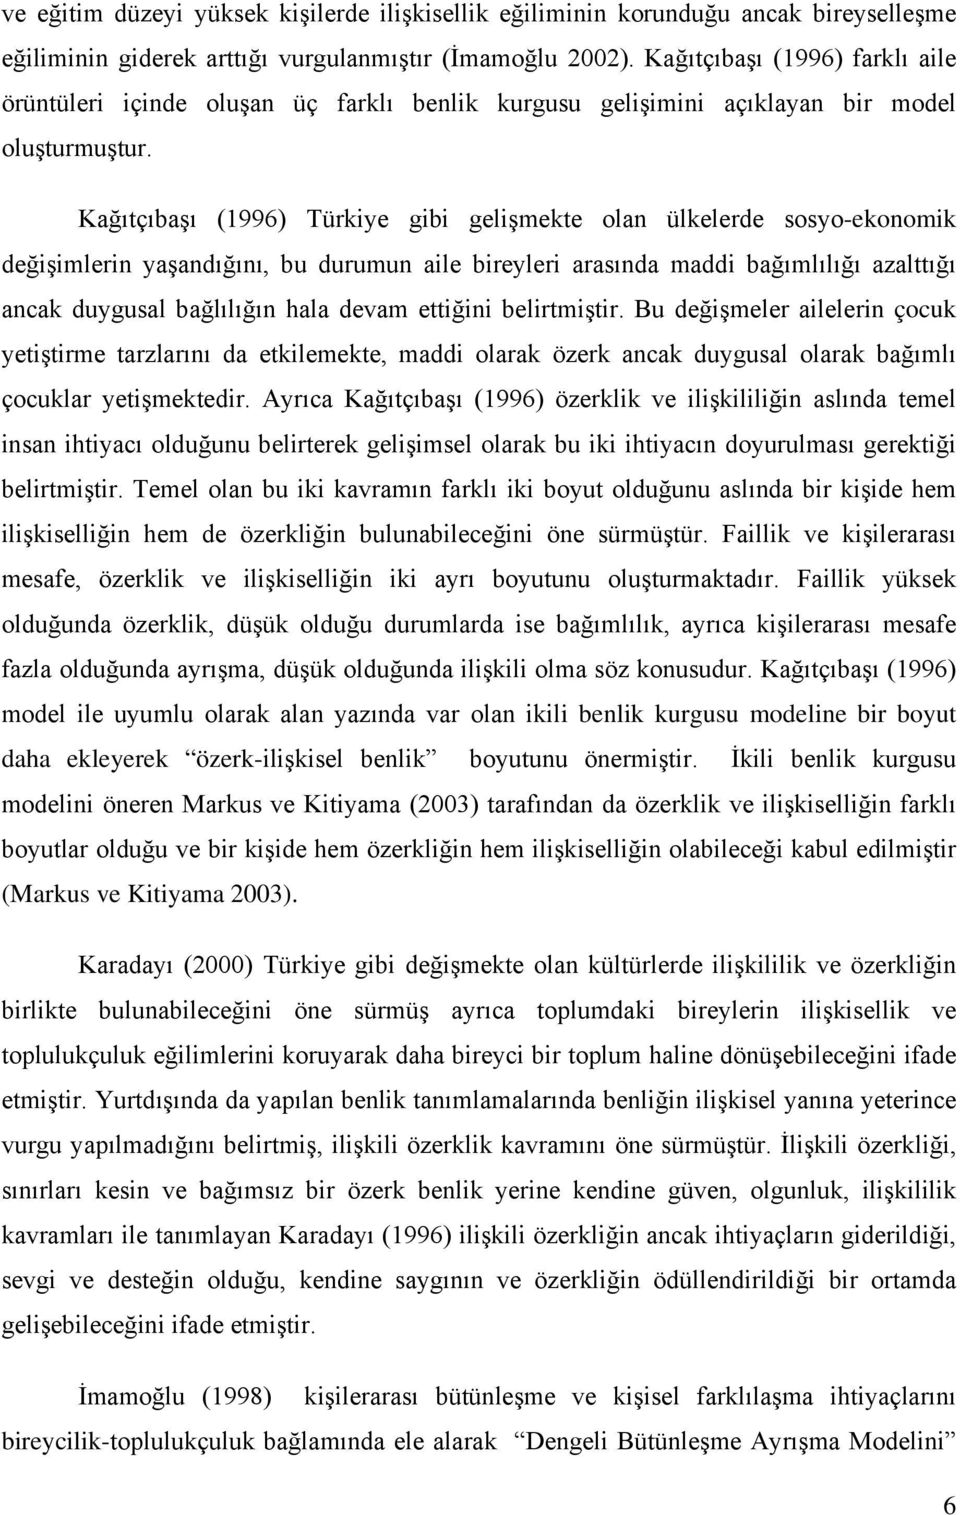 Kağıtçıbaşı (1996) Türkiye gibi gelişmekte olan ülkelerde sosyo-ekonomik değişimlerin yaşandığını, bu durumun aile bireyleri arasında maddi bağımlılığı azalttığı ancak duygusal bağlılığın hala devam